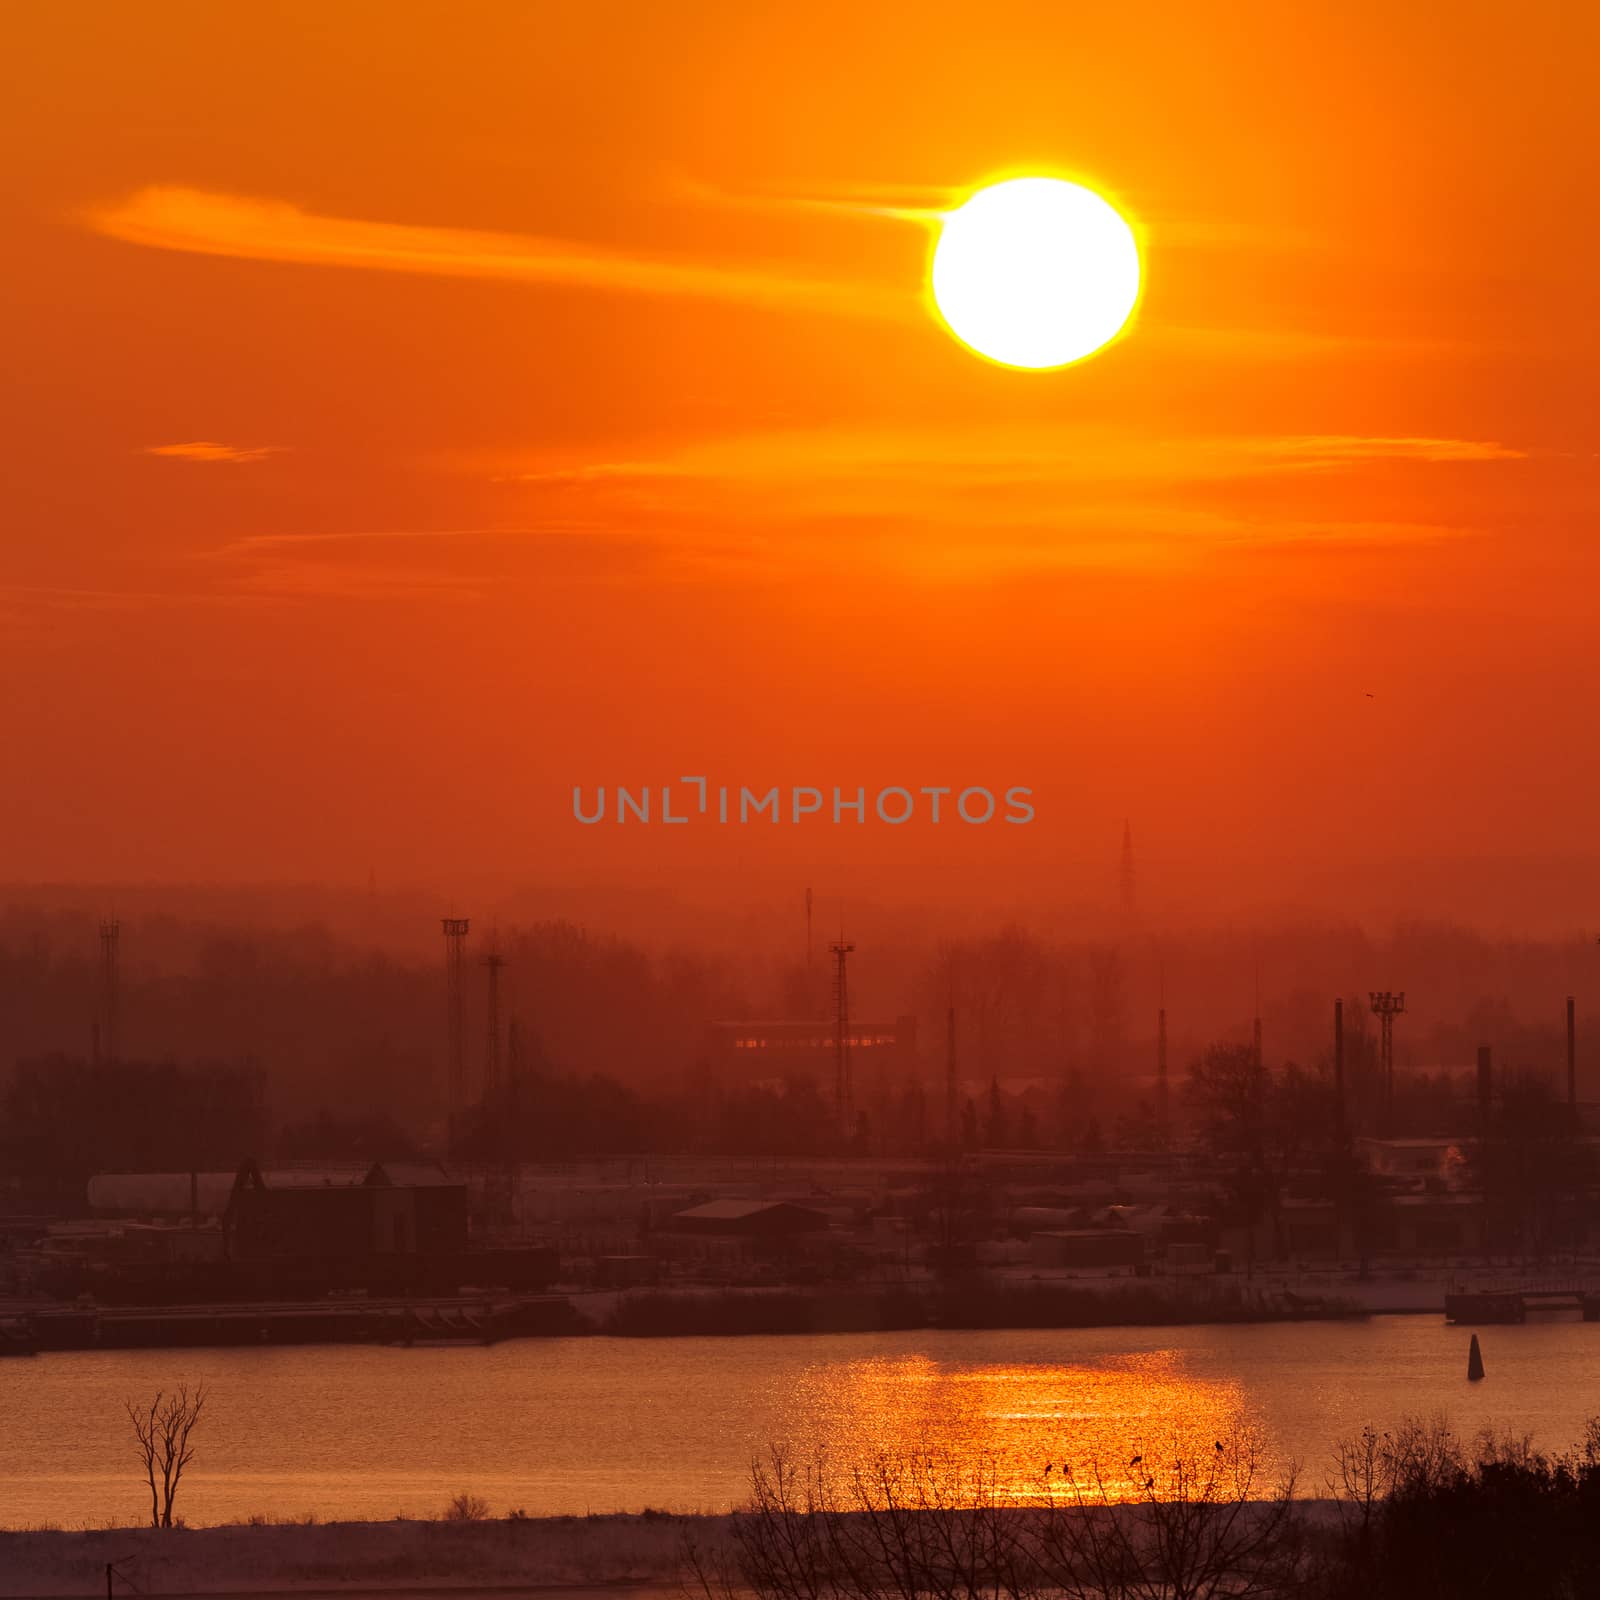 Urban sunset landscape by sengnsp